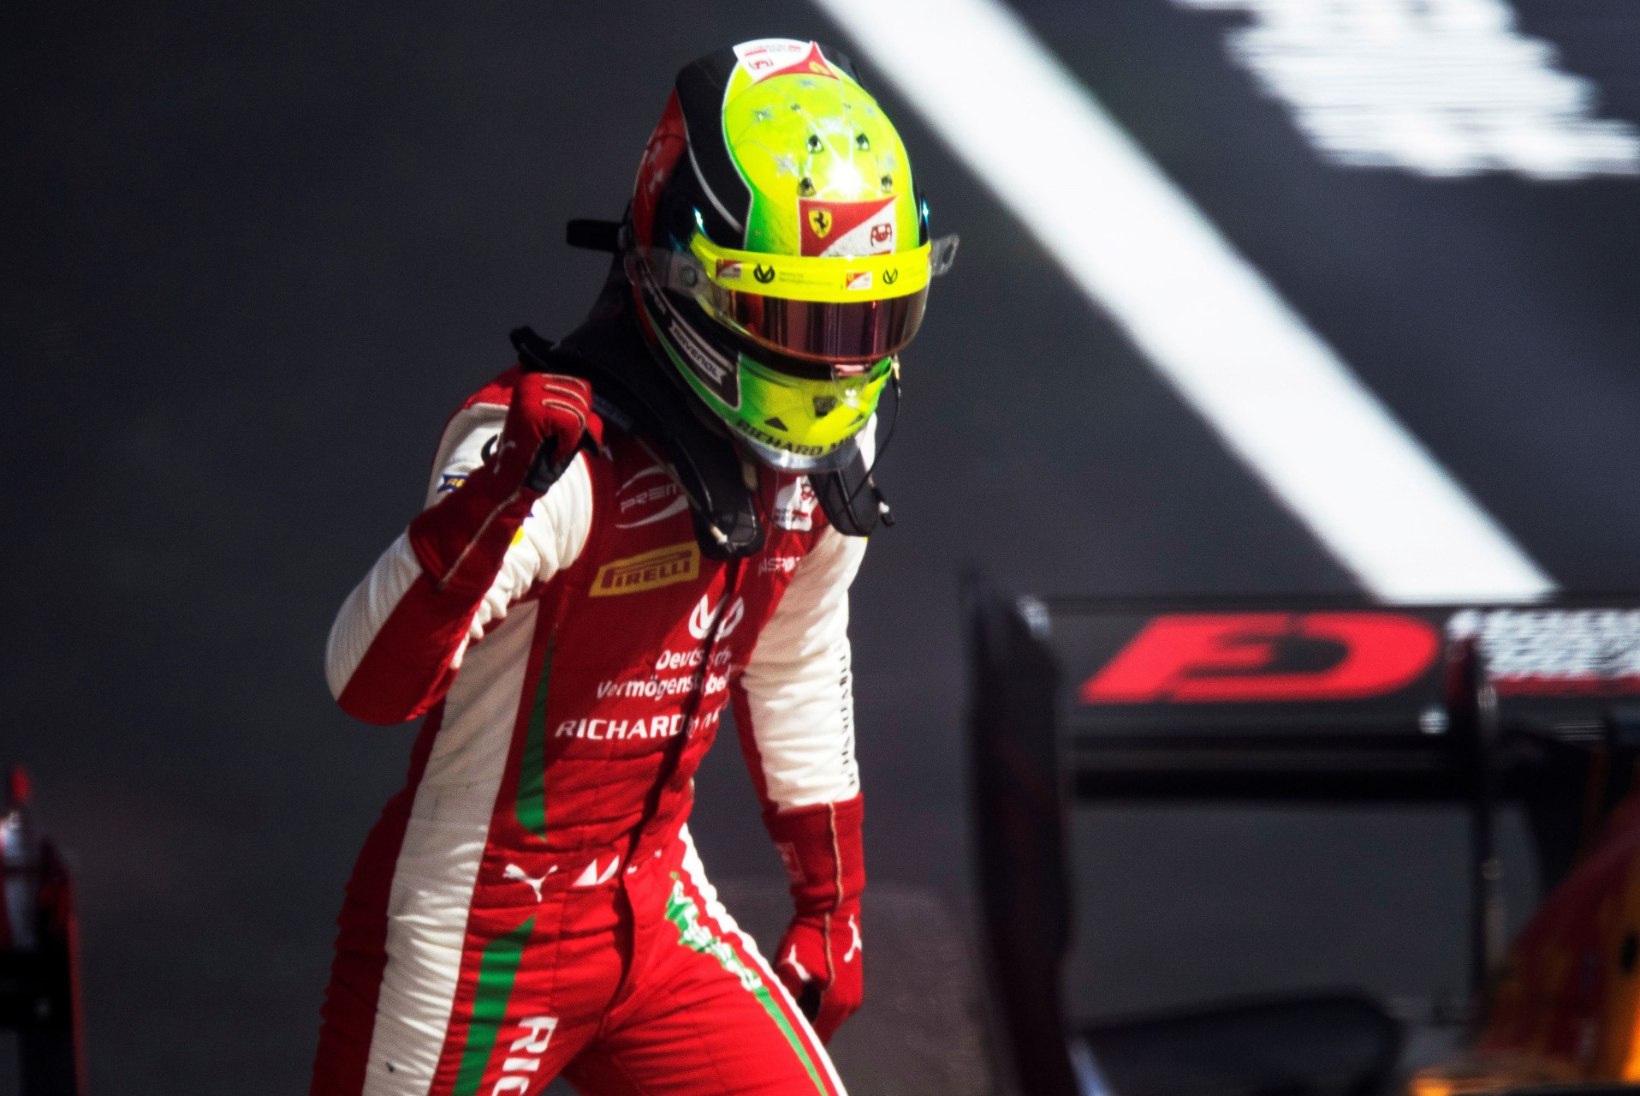 ISA JÄLGEDES: Mick Schumacher kihutab järgmisel aastal F1 sarjas